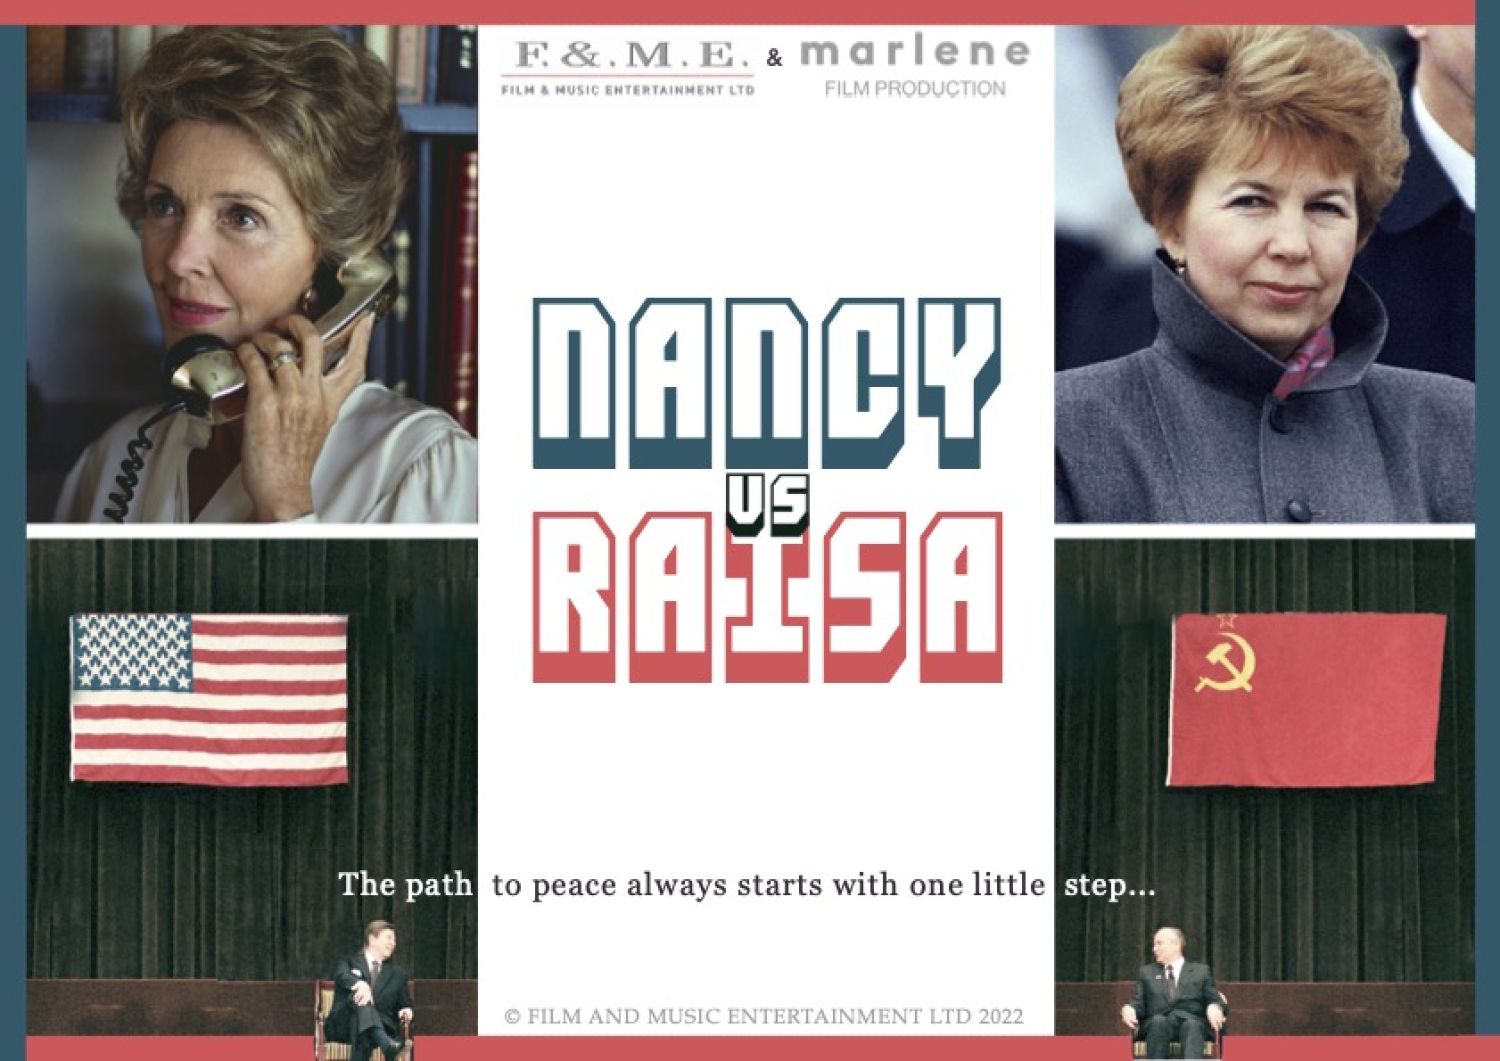 NANCY vs RAISA